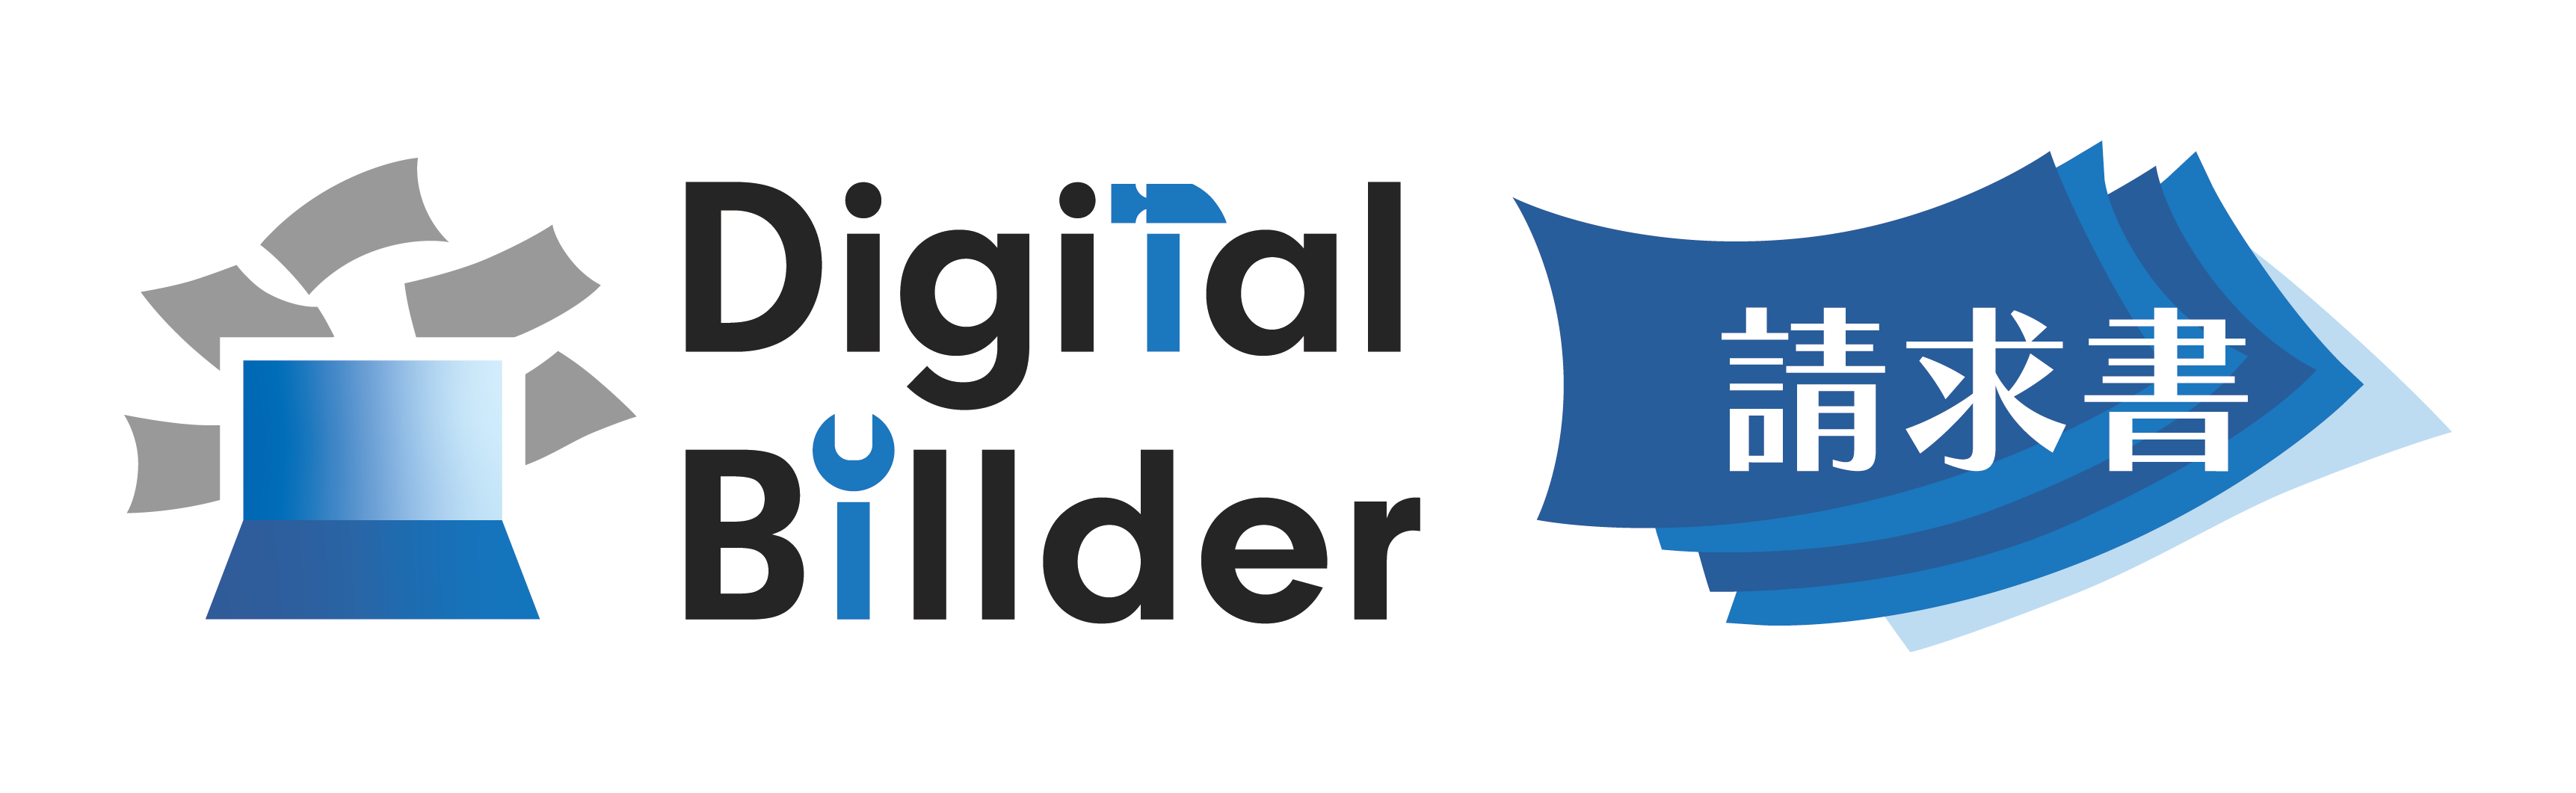 Digital Billder